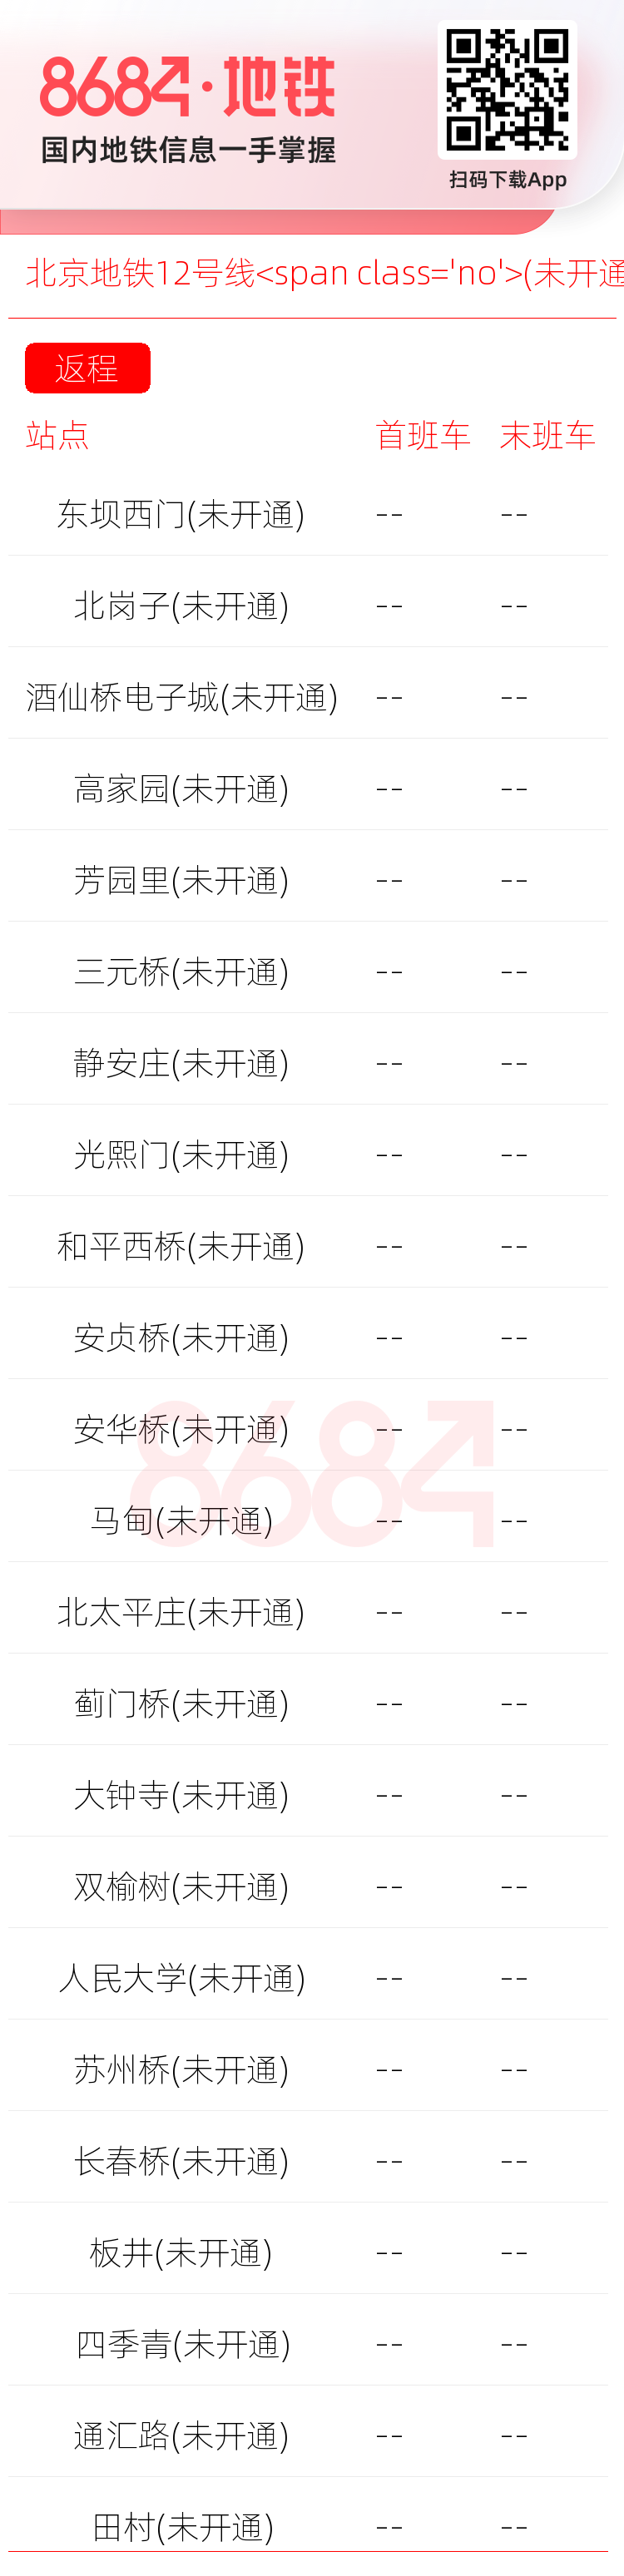 北京地铁12号线<span class='no'>(未开通)</span>运营时间表